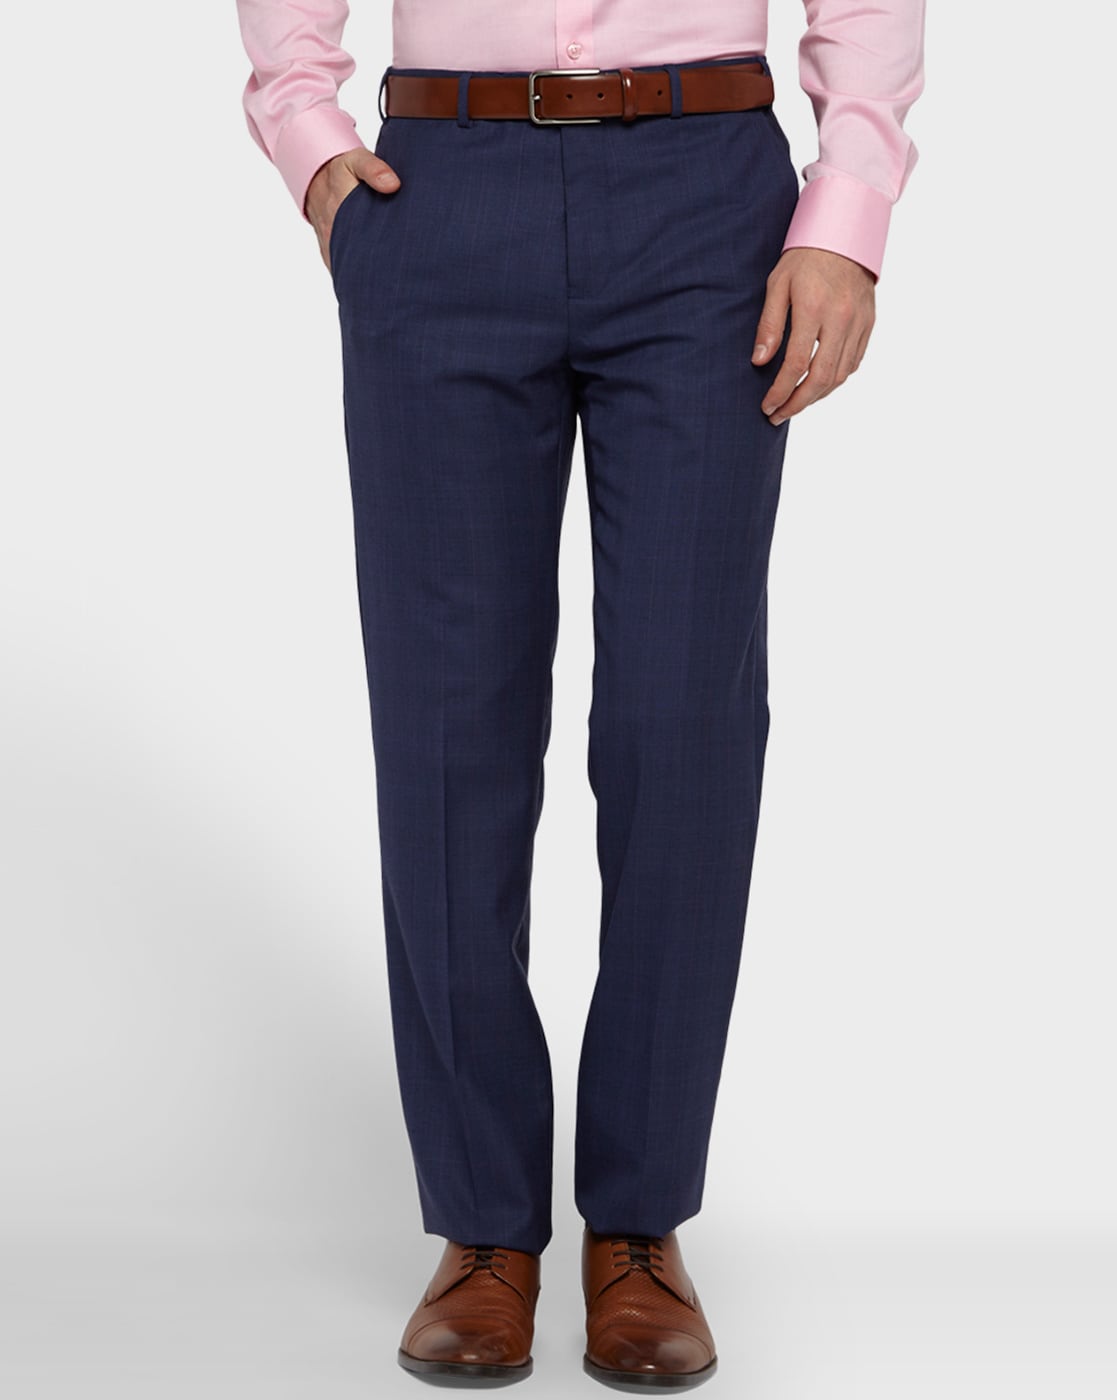 fcity.in - Elanhood Blue White Slim Fit Formal Trouser Formal Pant For Men